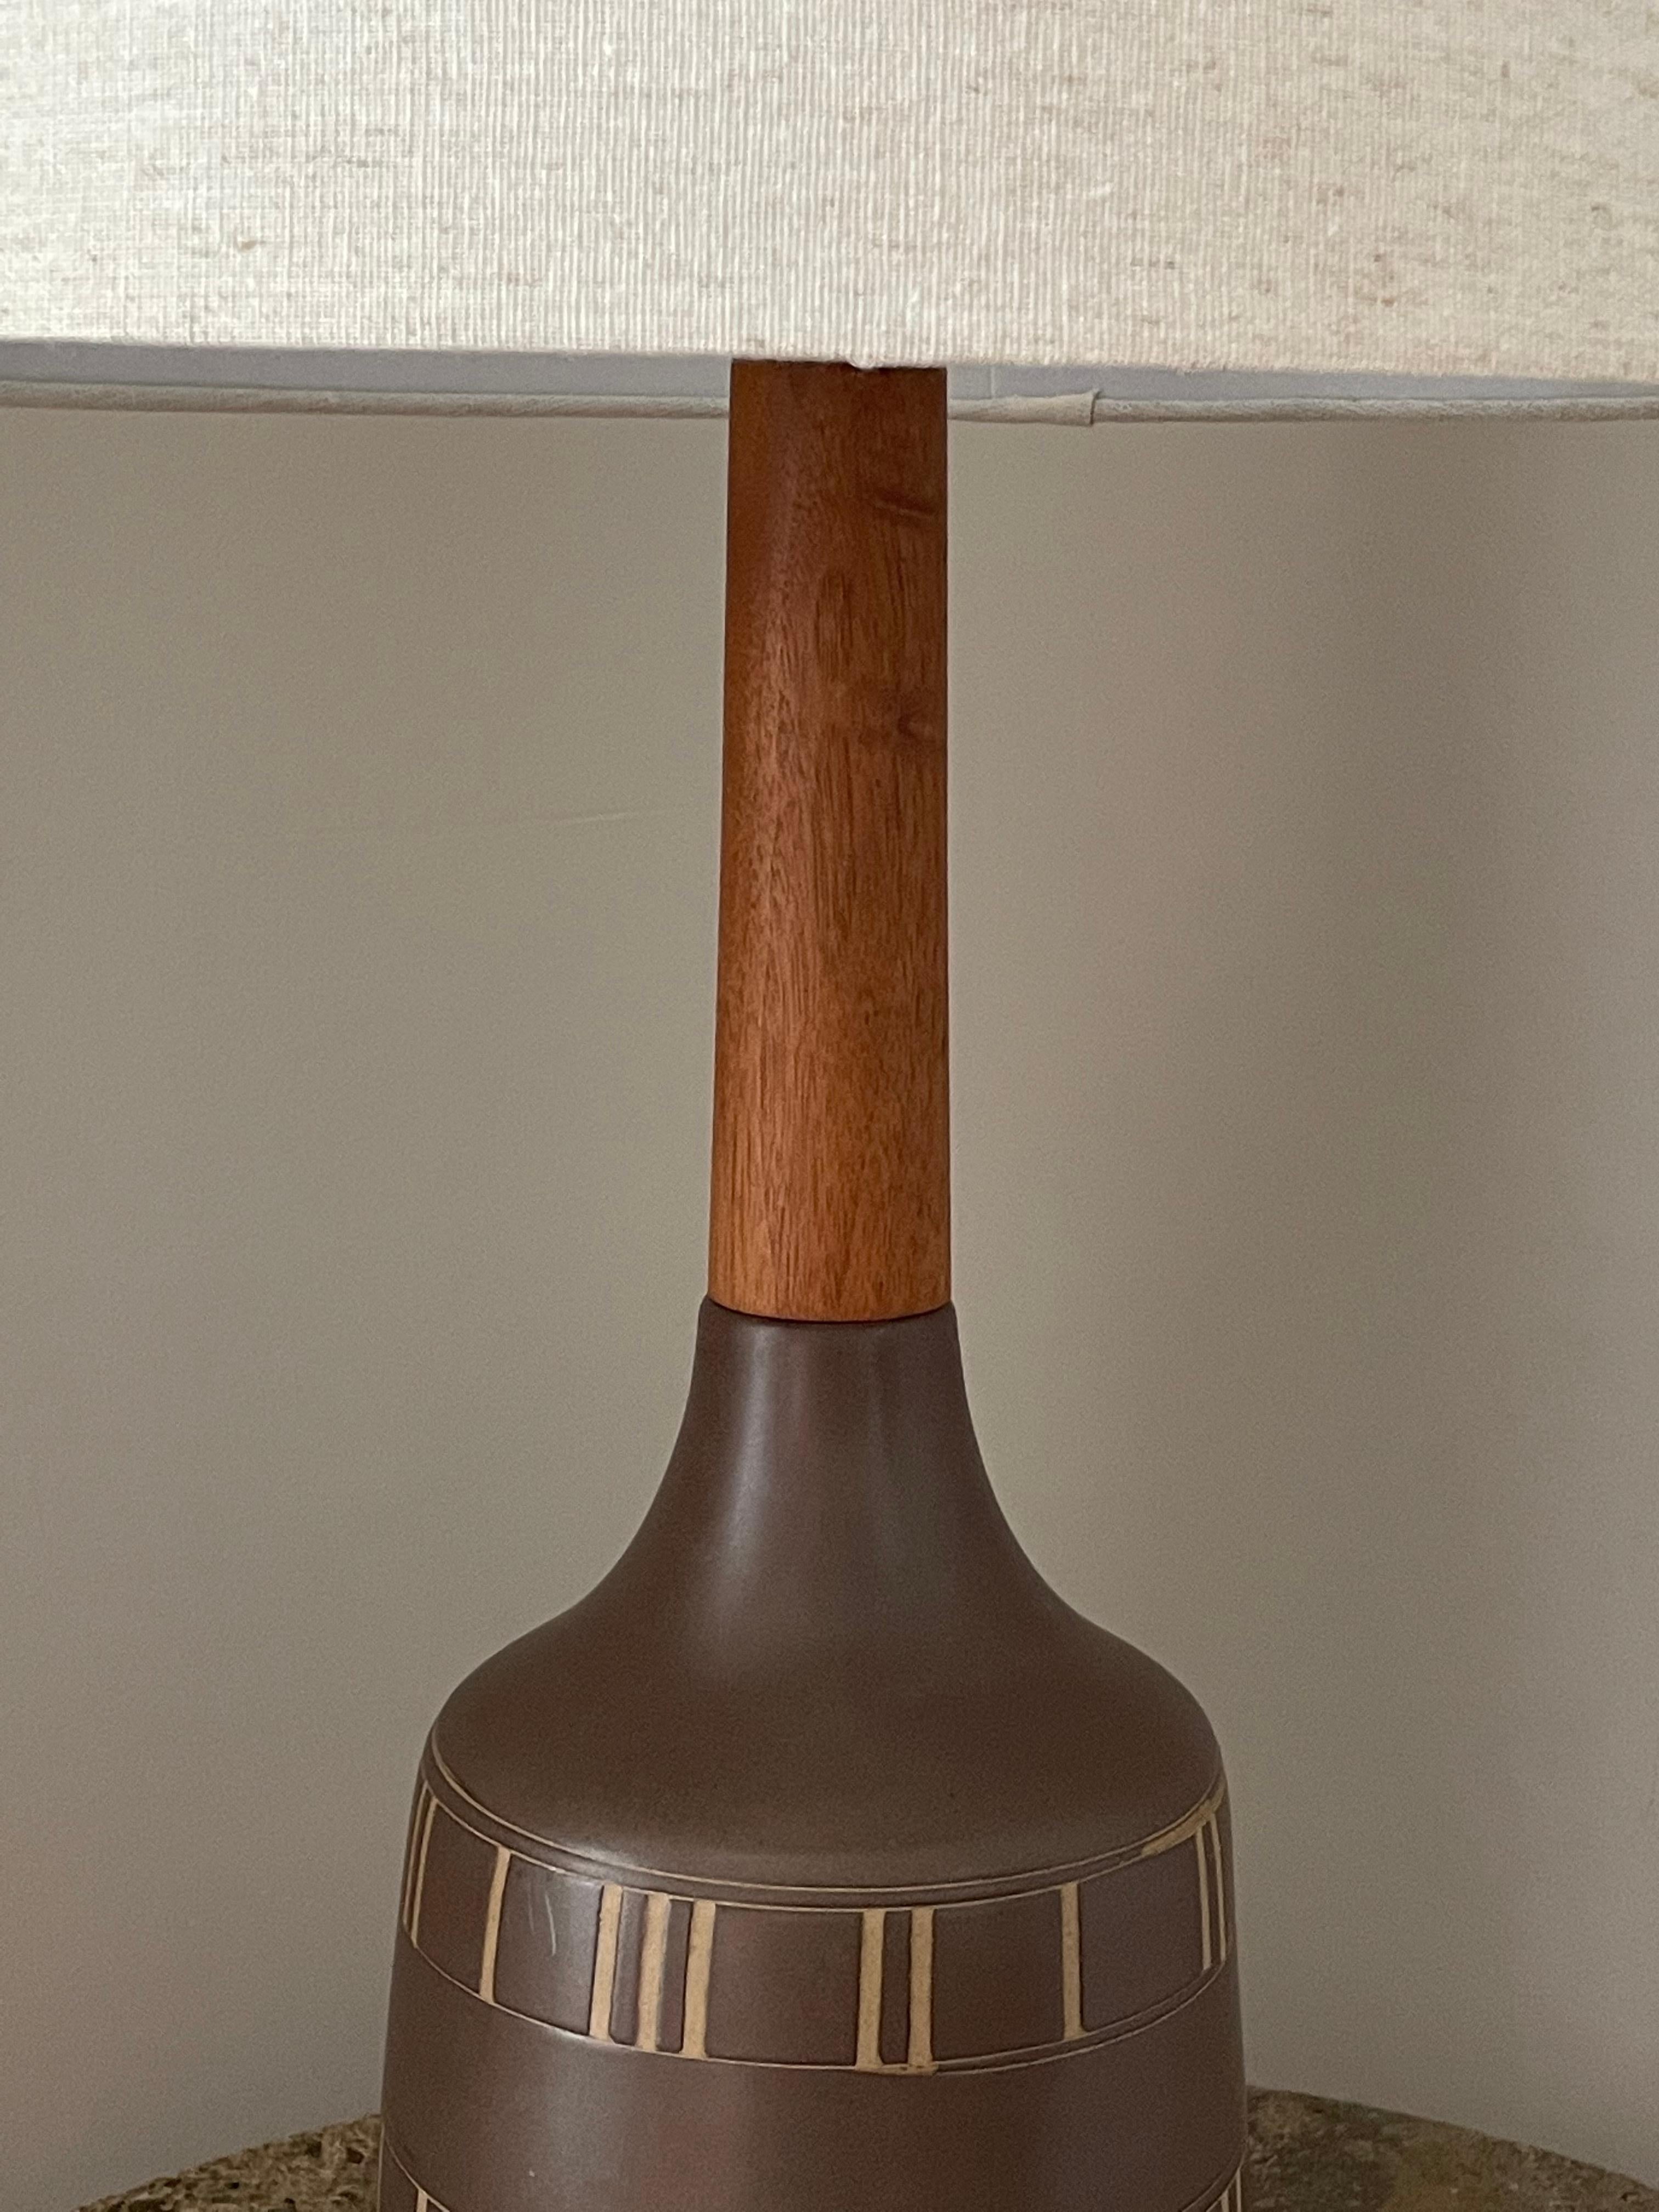 Wunderschöne hohe Tischlampe, entworfen von dem berühmten Keramikerduo Jane und Gordon Martz für Marshall Studios. Dunkelbraune, matte Glasur mit eingeschnittenem Muster. Langer Nussbaumhals mit dazugehörigem